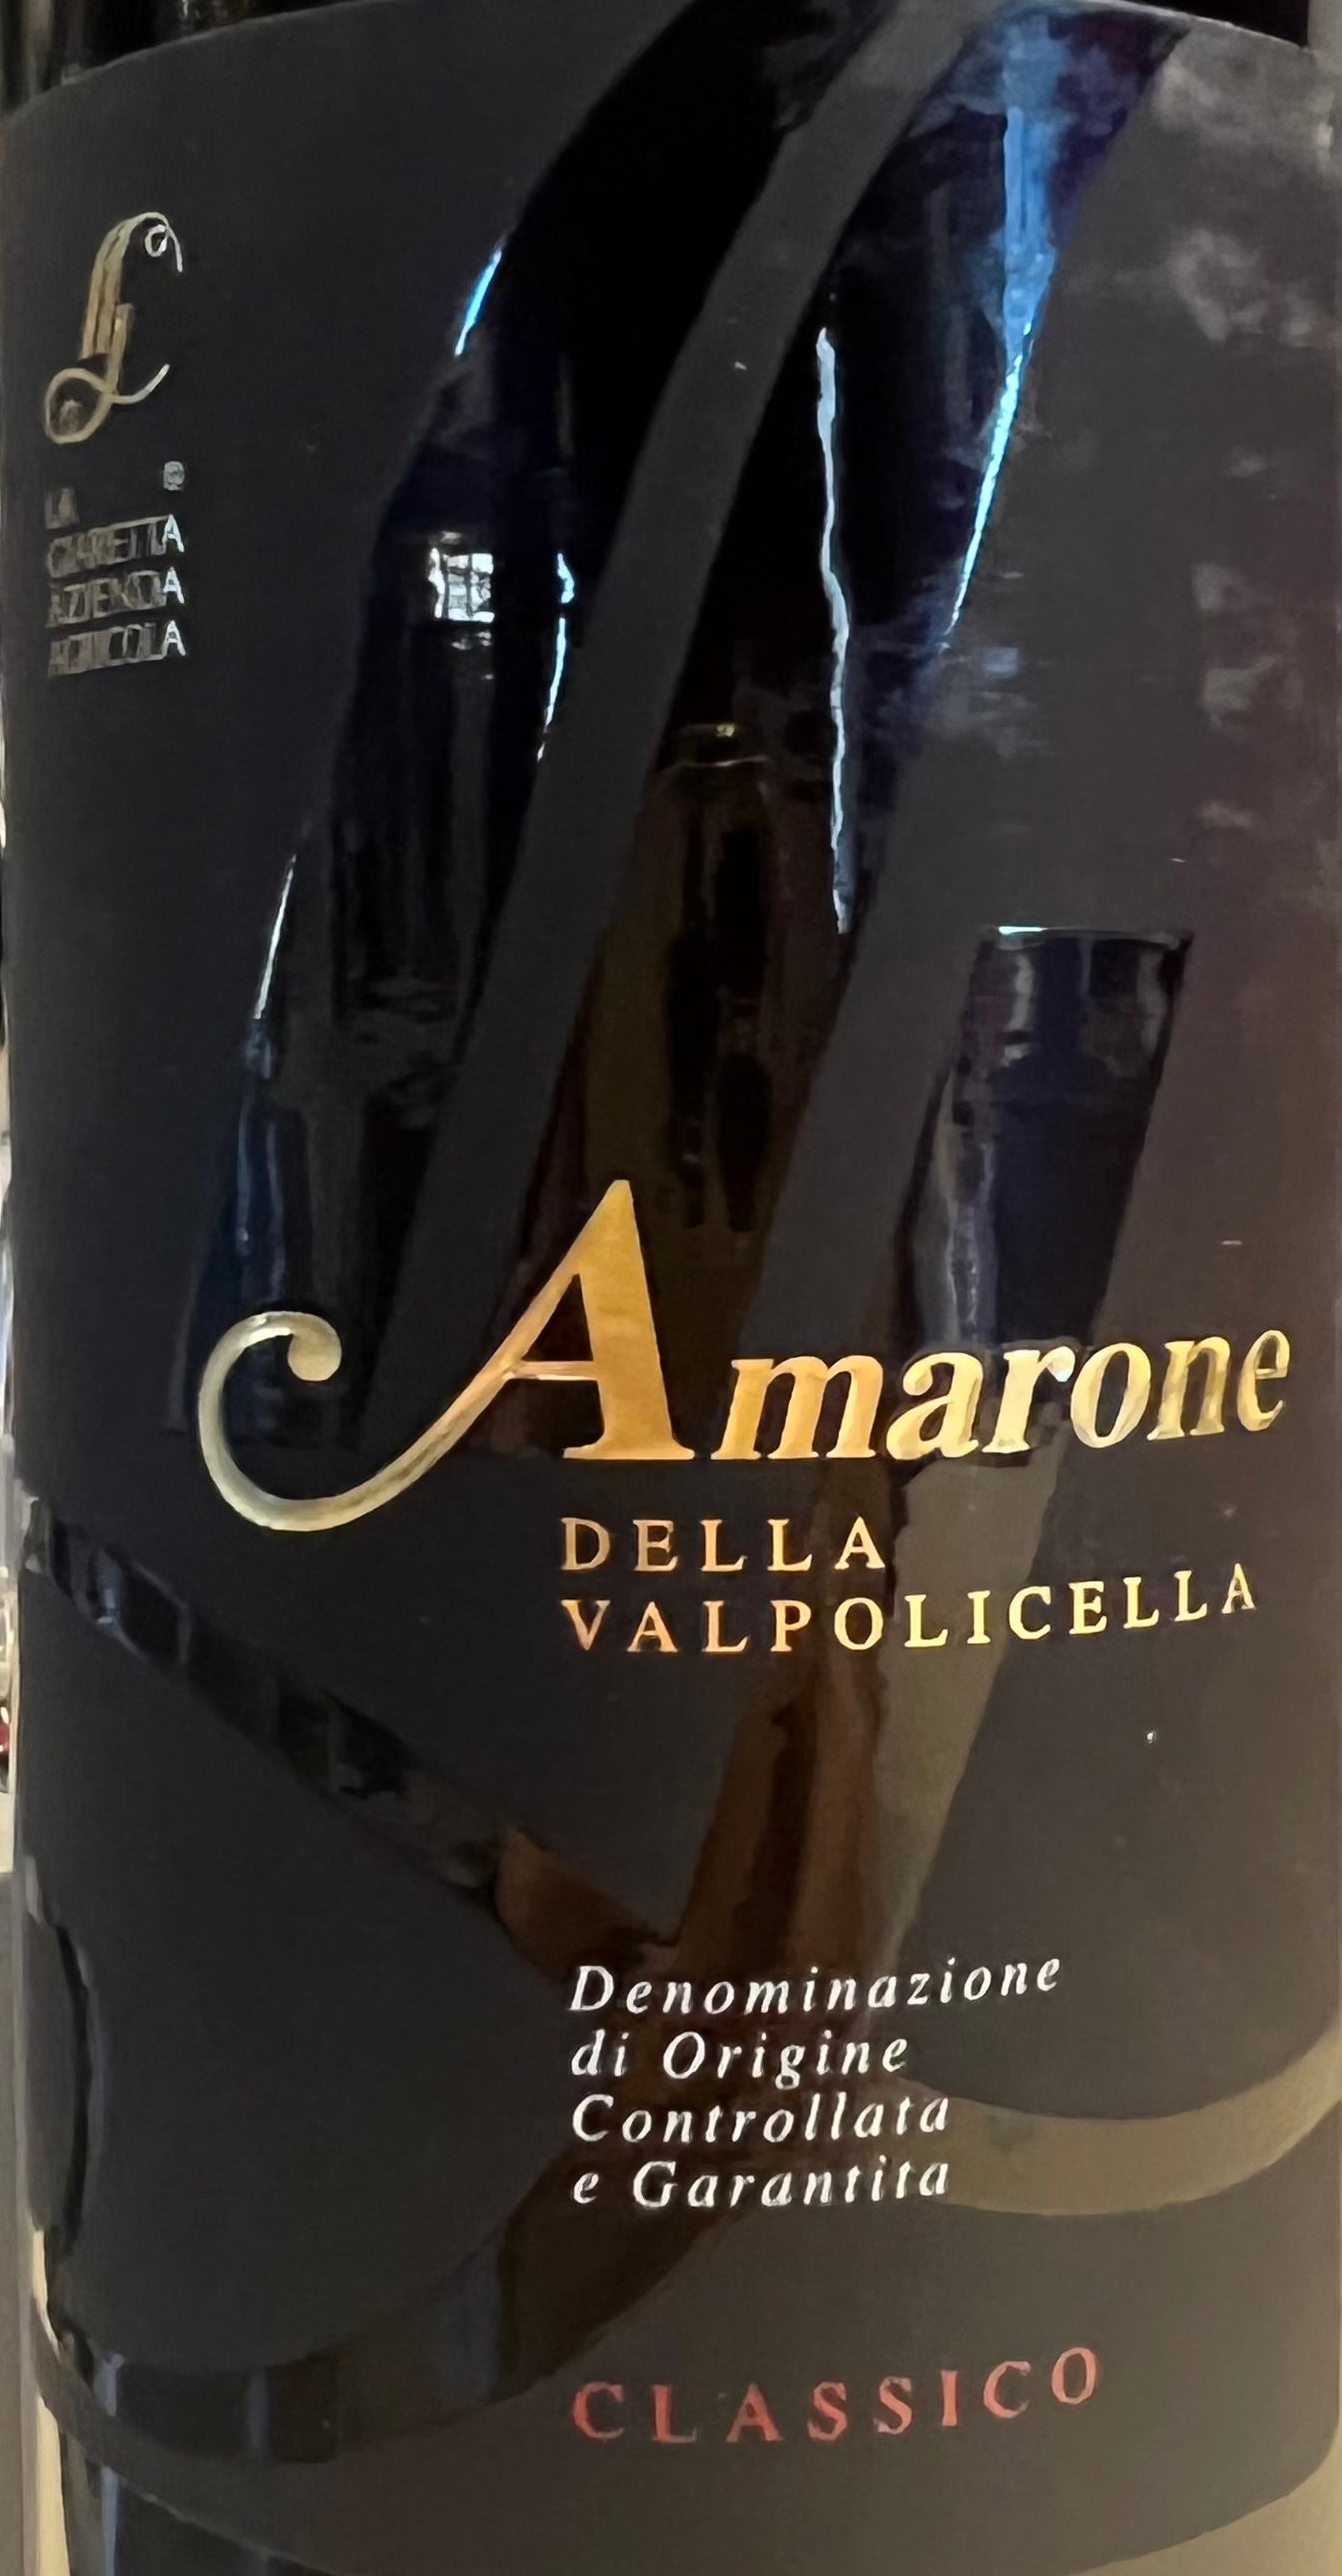 La Giaretta - Amarone della Valpolicella Classico